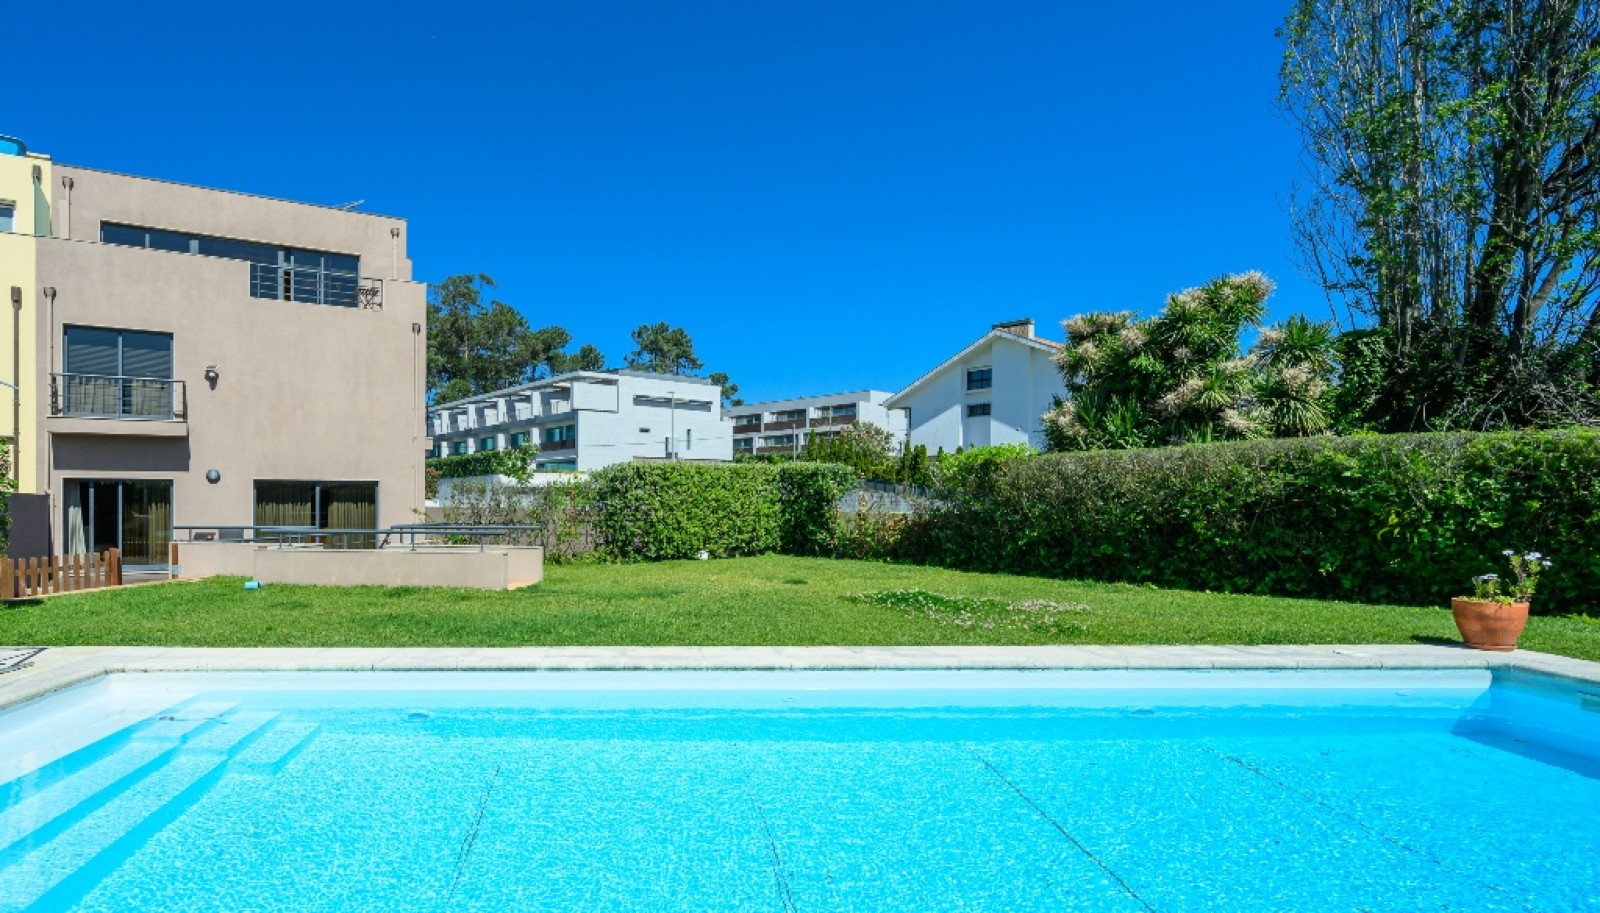 Moradia V5 com piscina, à venda, ao Parque da Cidade do Porto, Portugal_261771